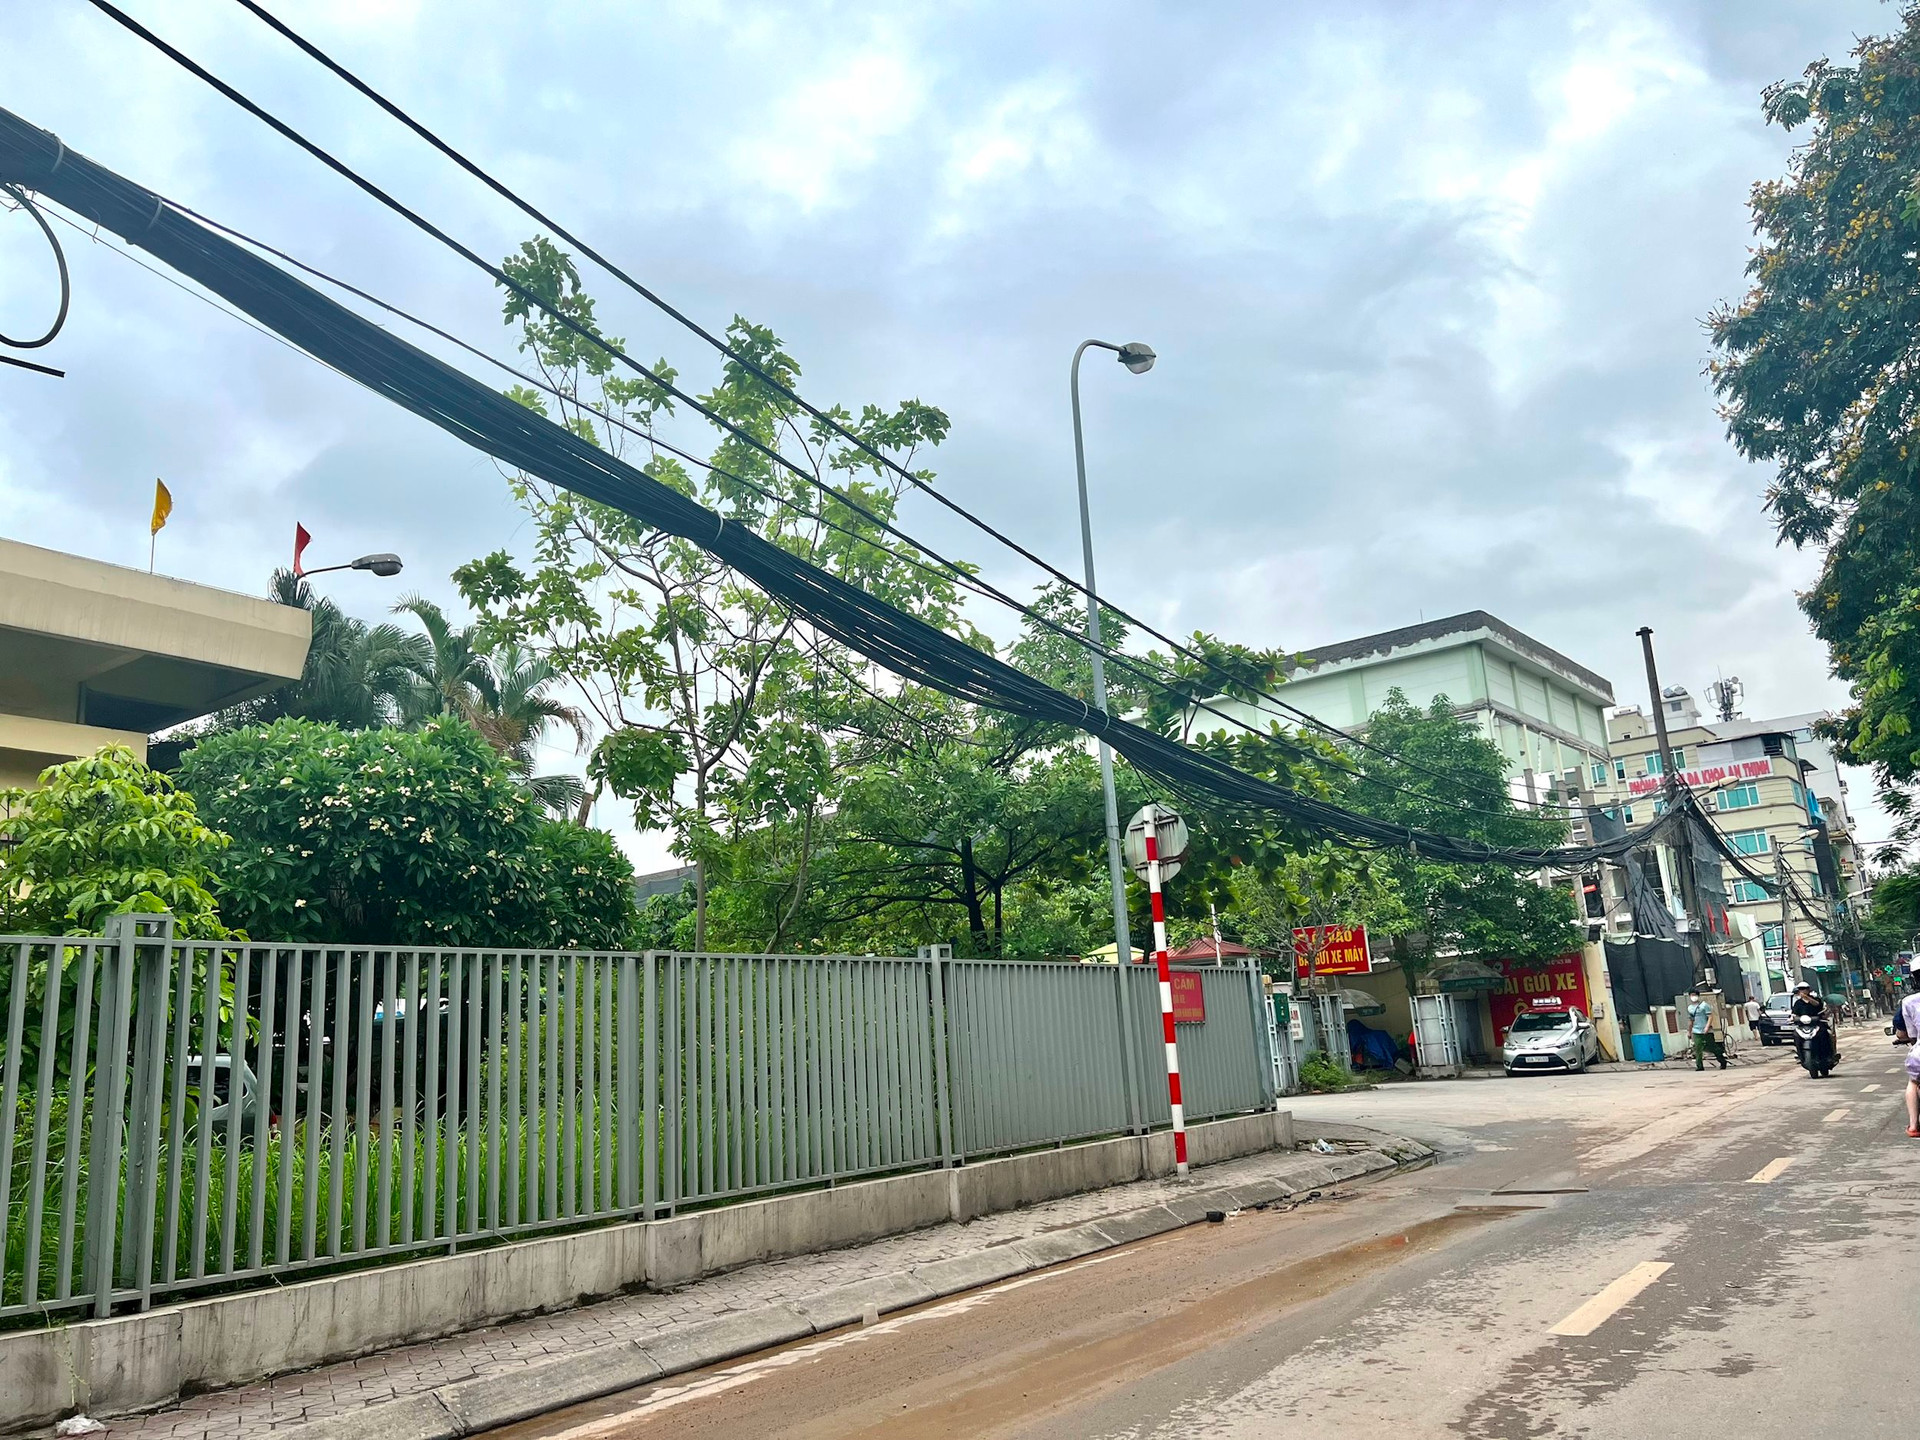 7.jpgBúi dây điện buông thõng trước cửa Bệnh viện 19-8 số 9 Trần Bình, phường Mai Dịch (quận Cầu Giấy)